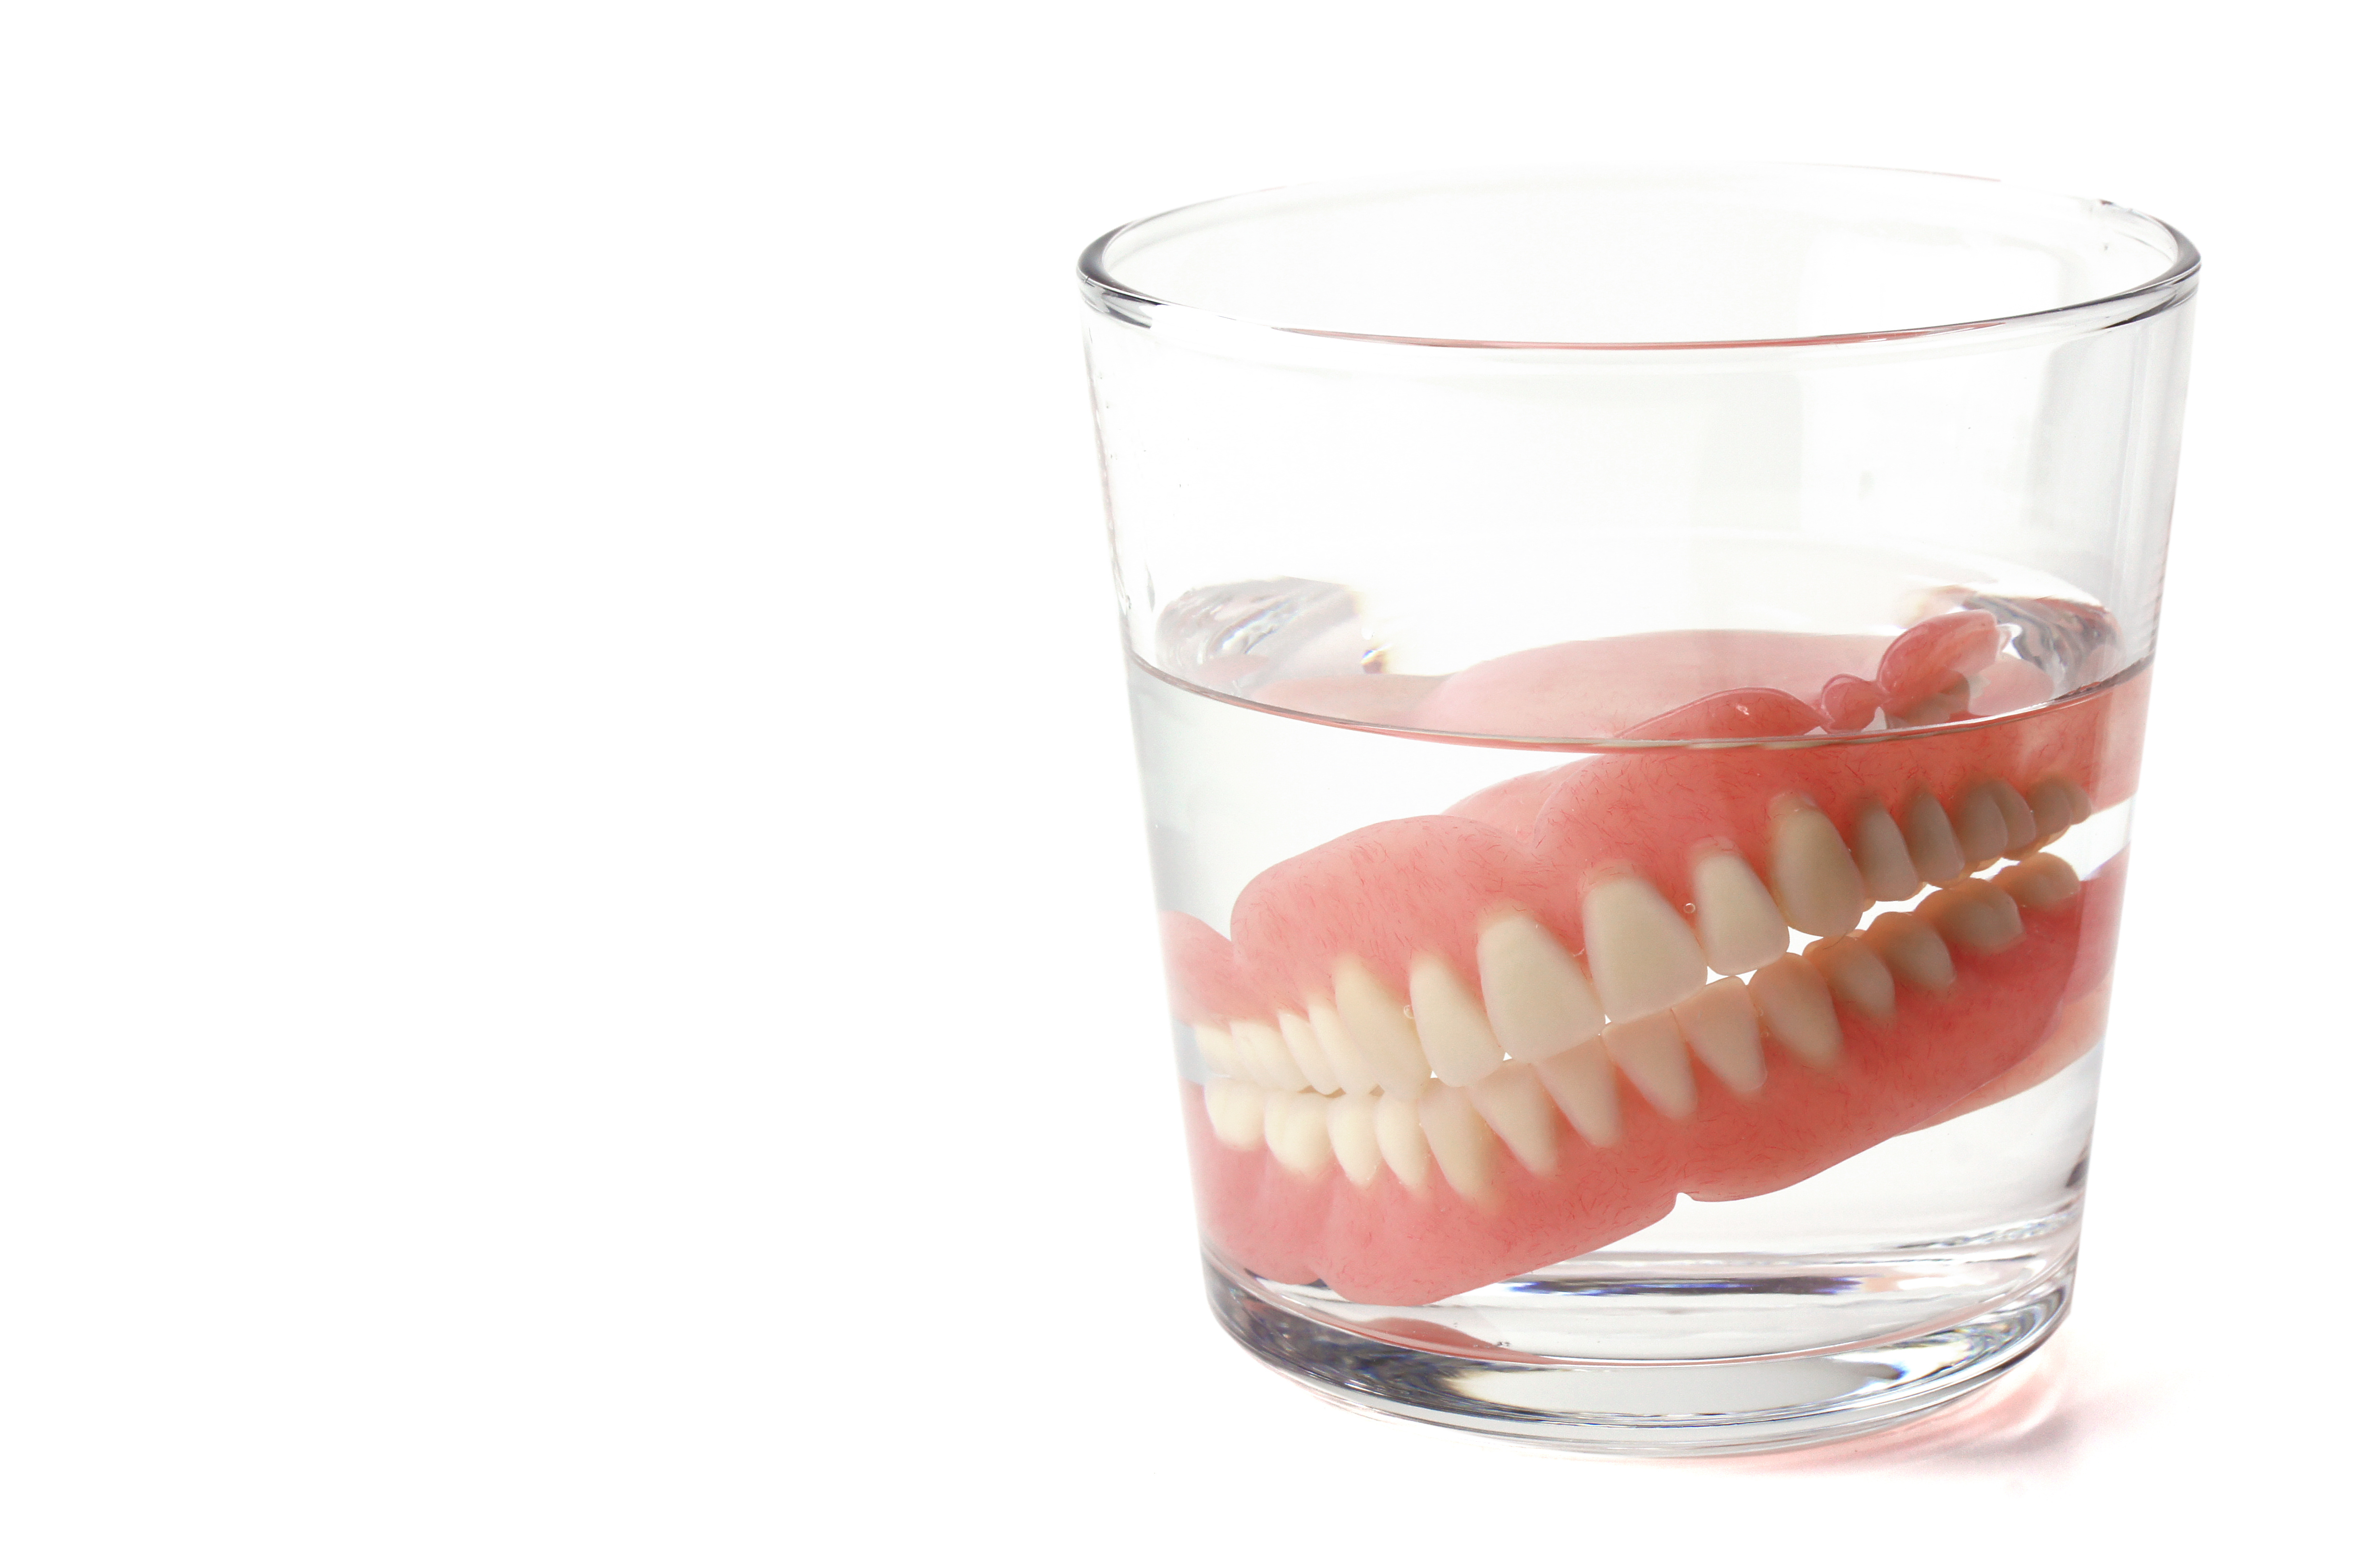 Zahnprothese in Wasserglas